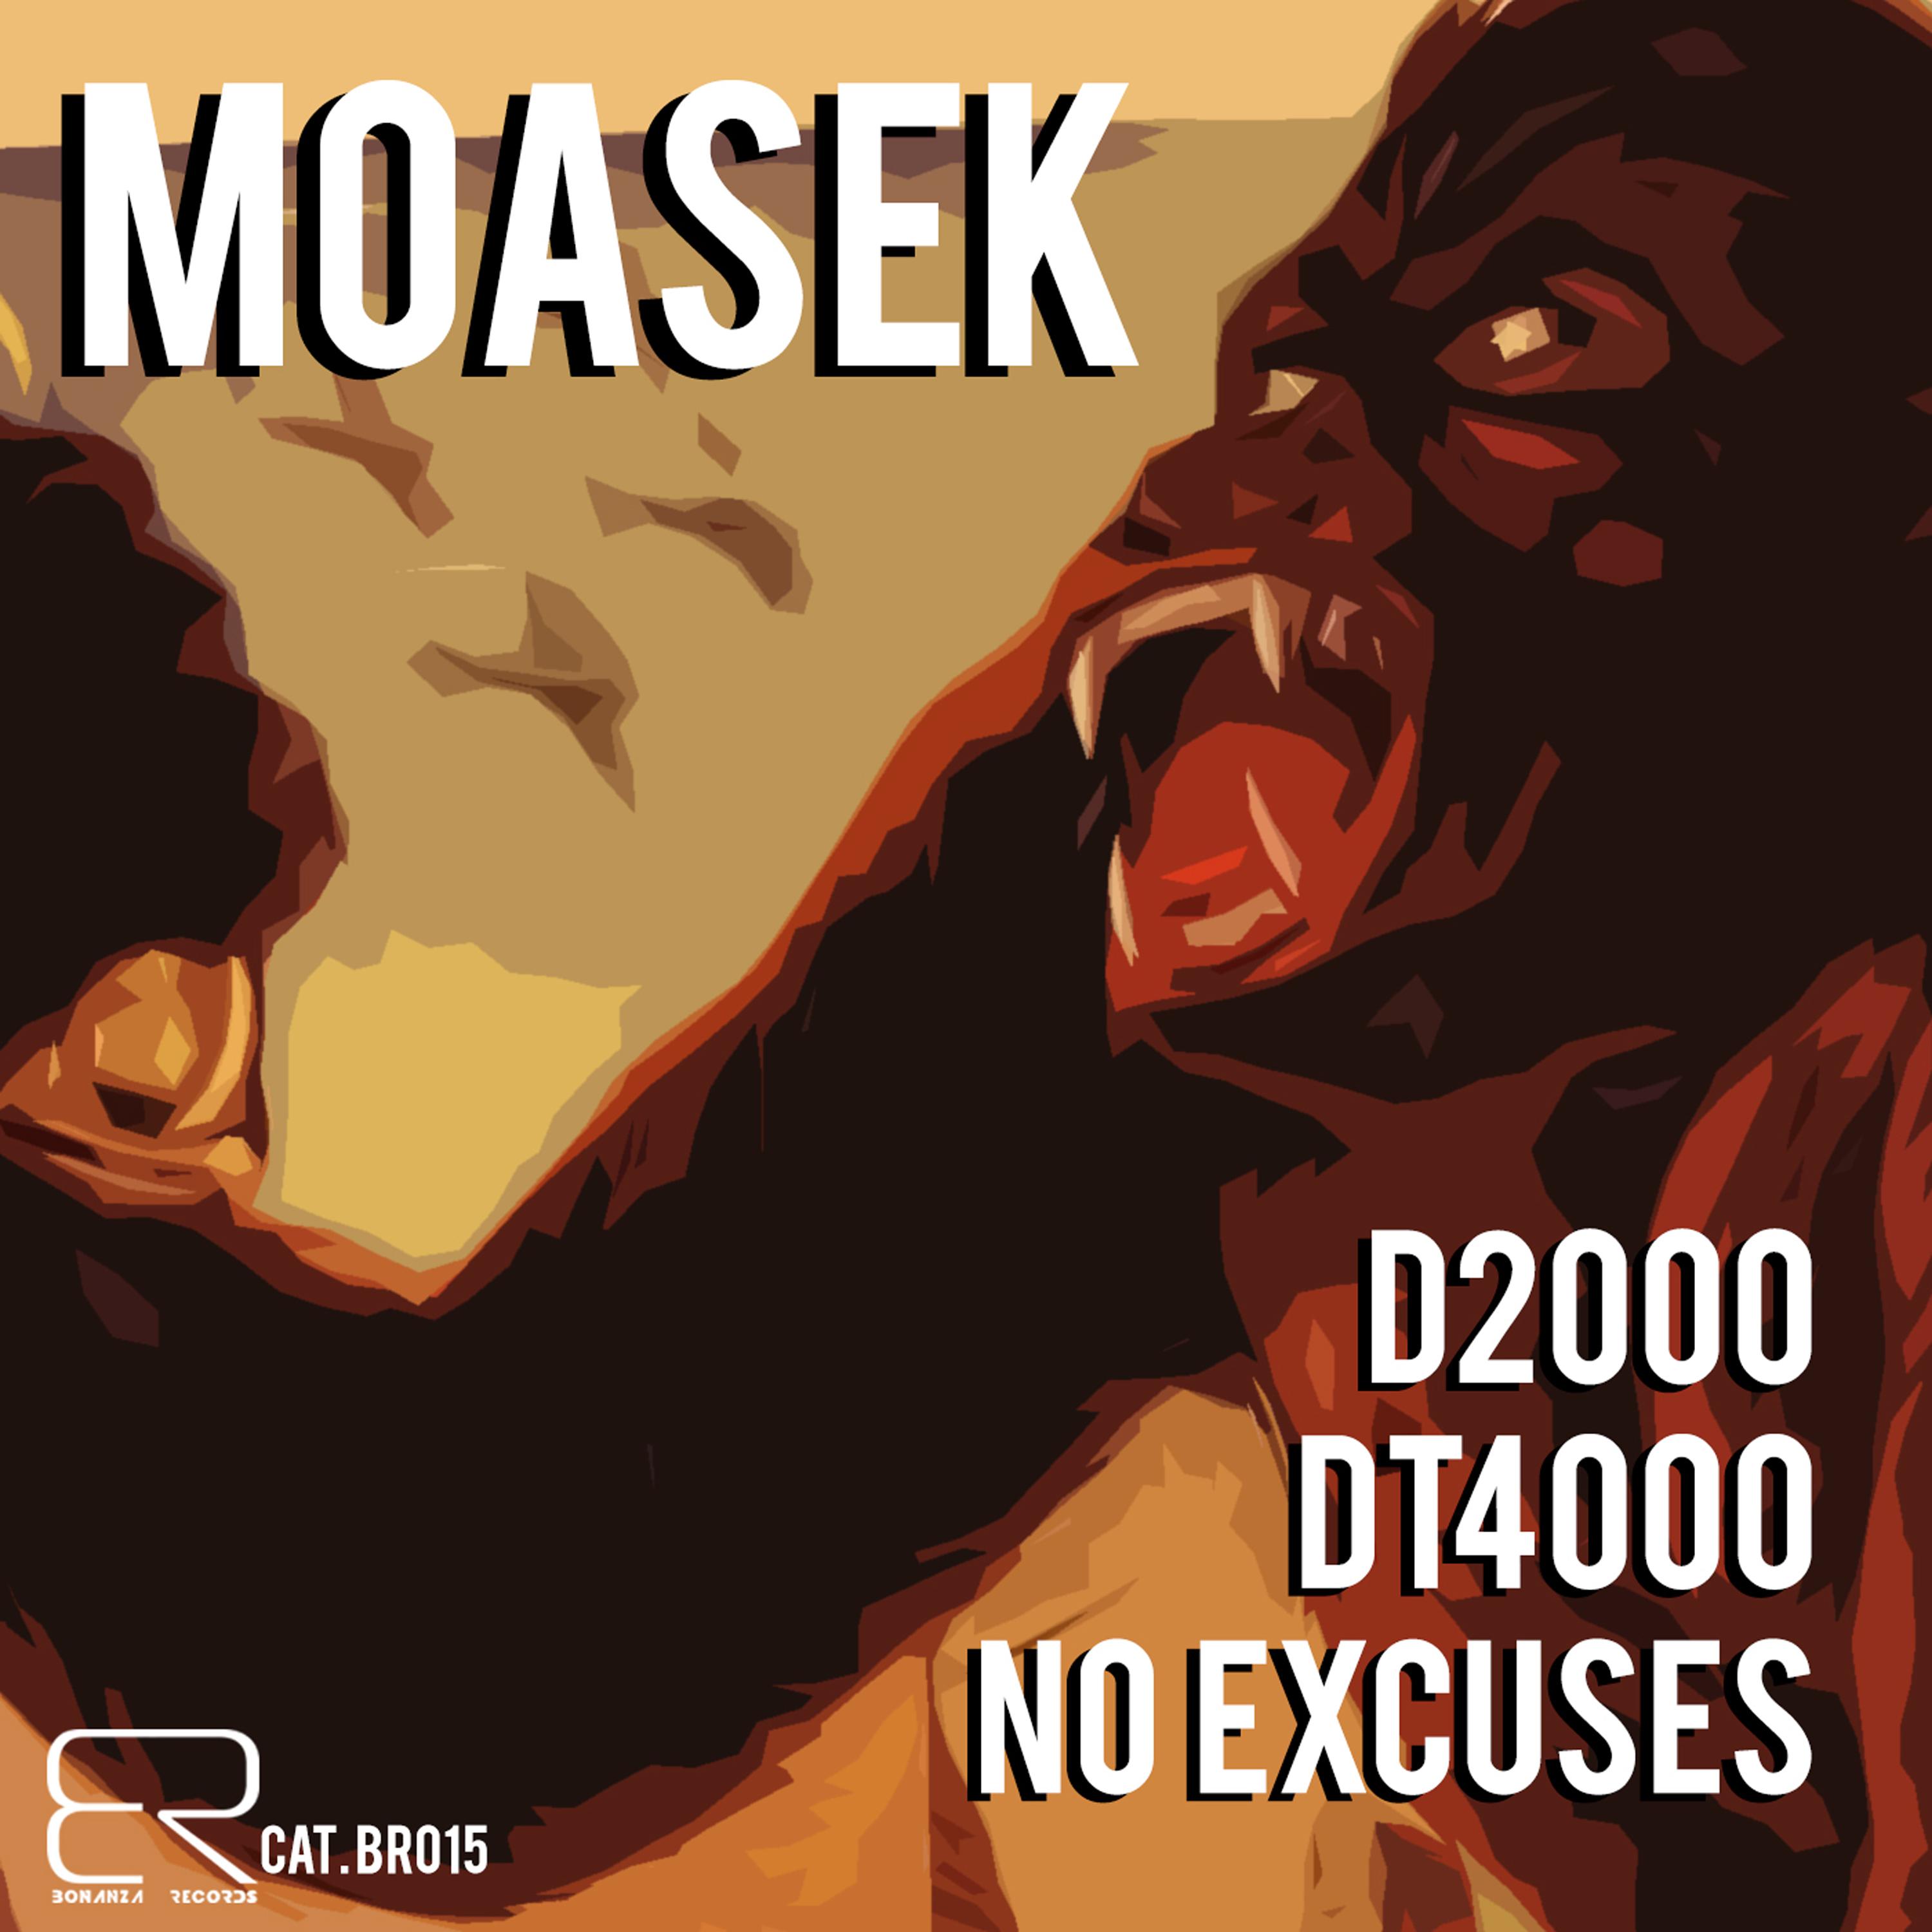 Moasek